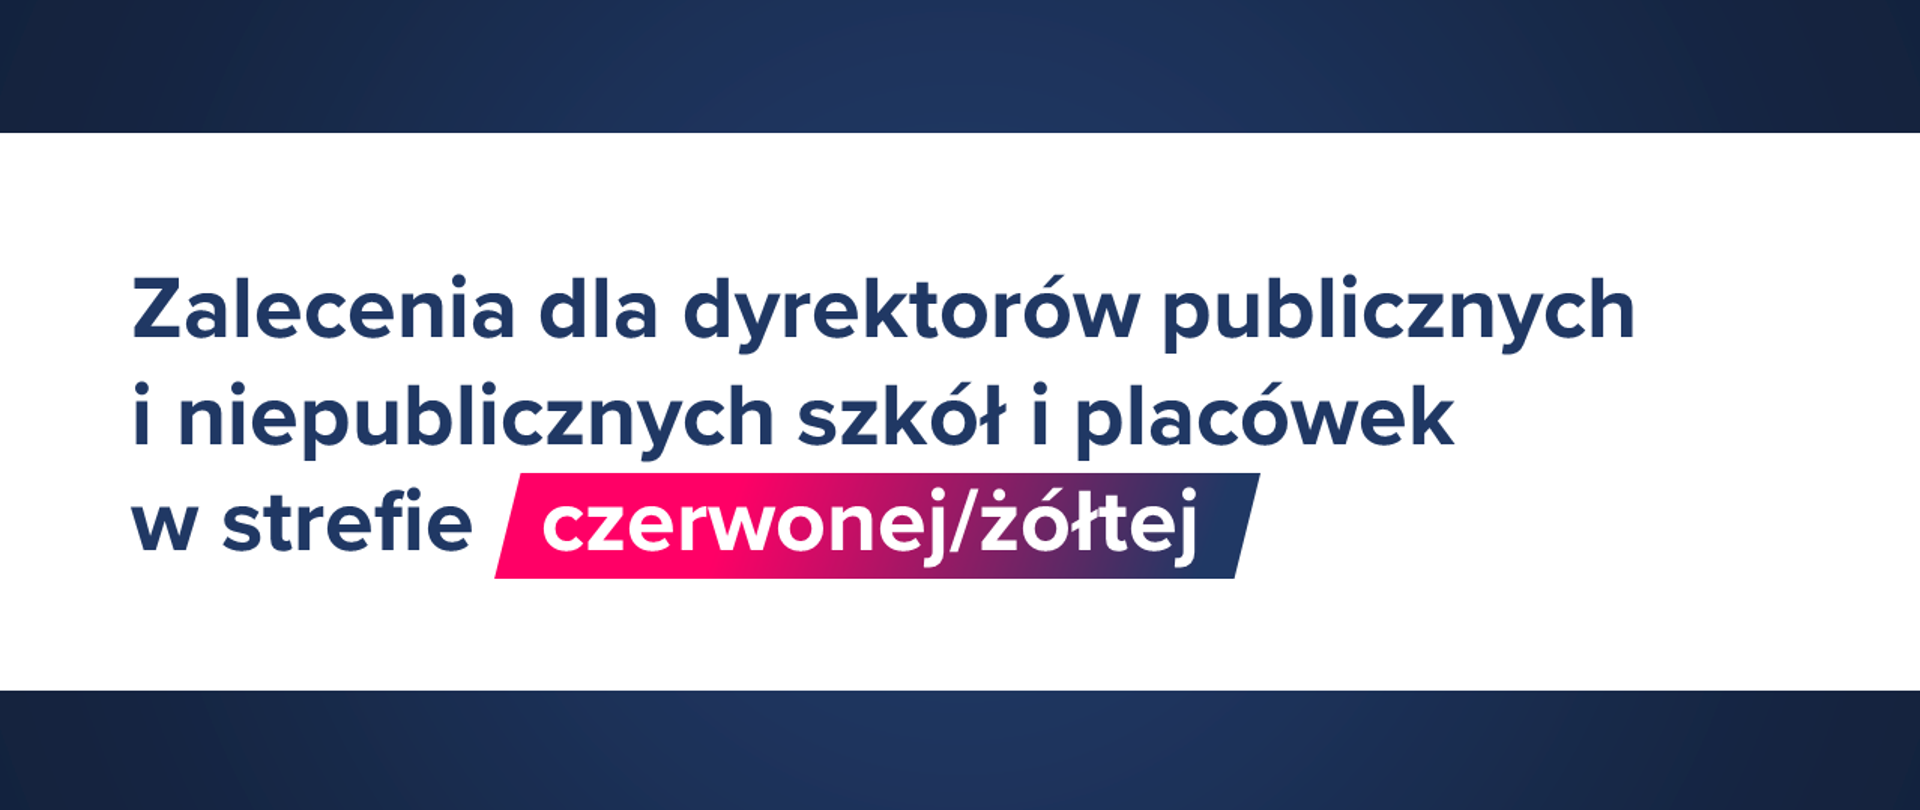 Grafika z tekstem "Zalecenia dla dyrektorów publicznych i niepublicznych szkół i placówek w strefie czerwonej/żółtej".